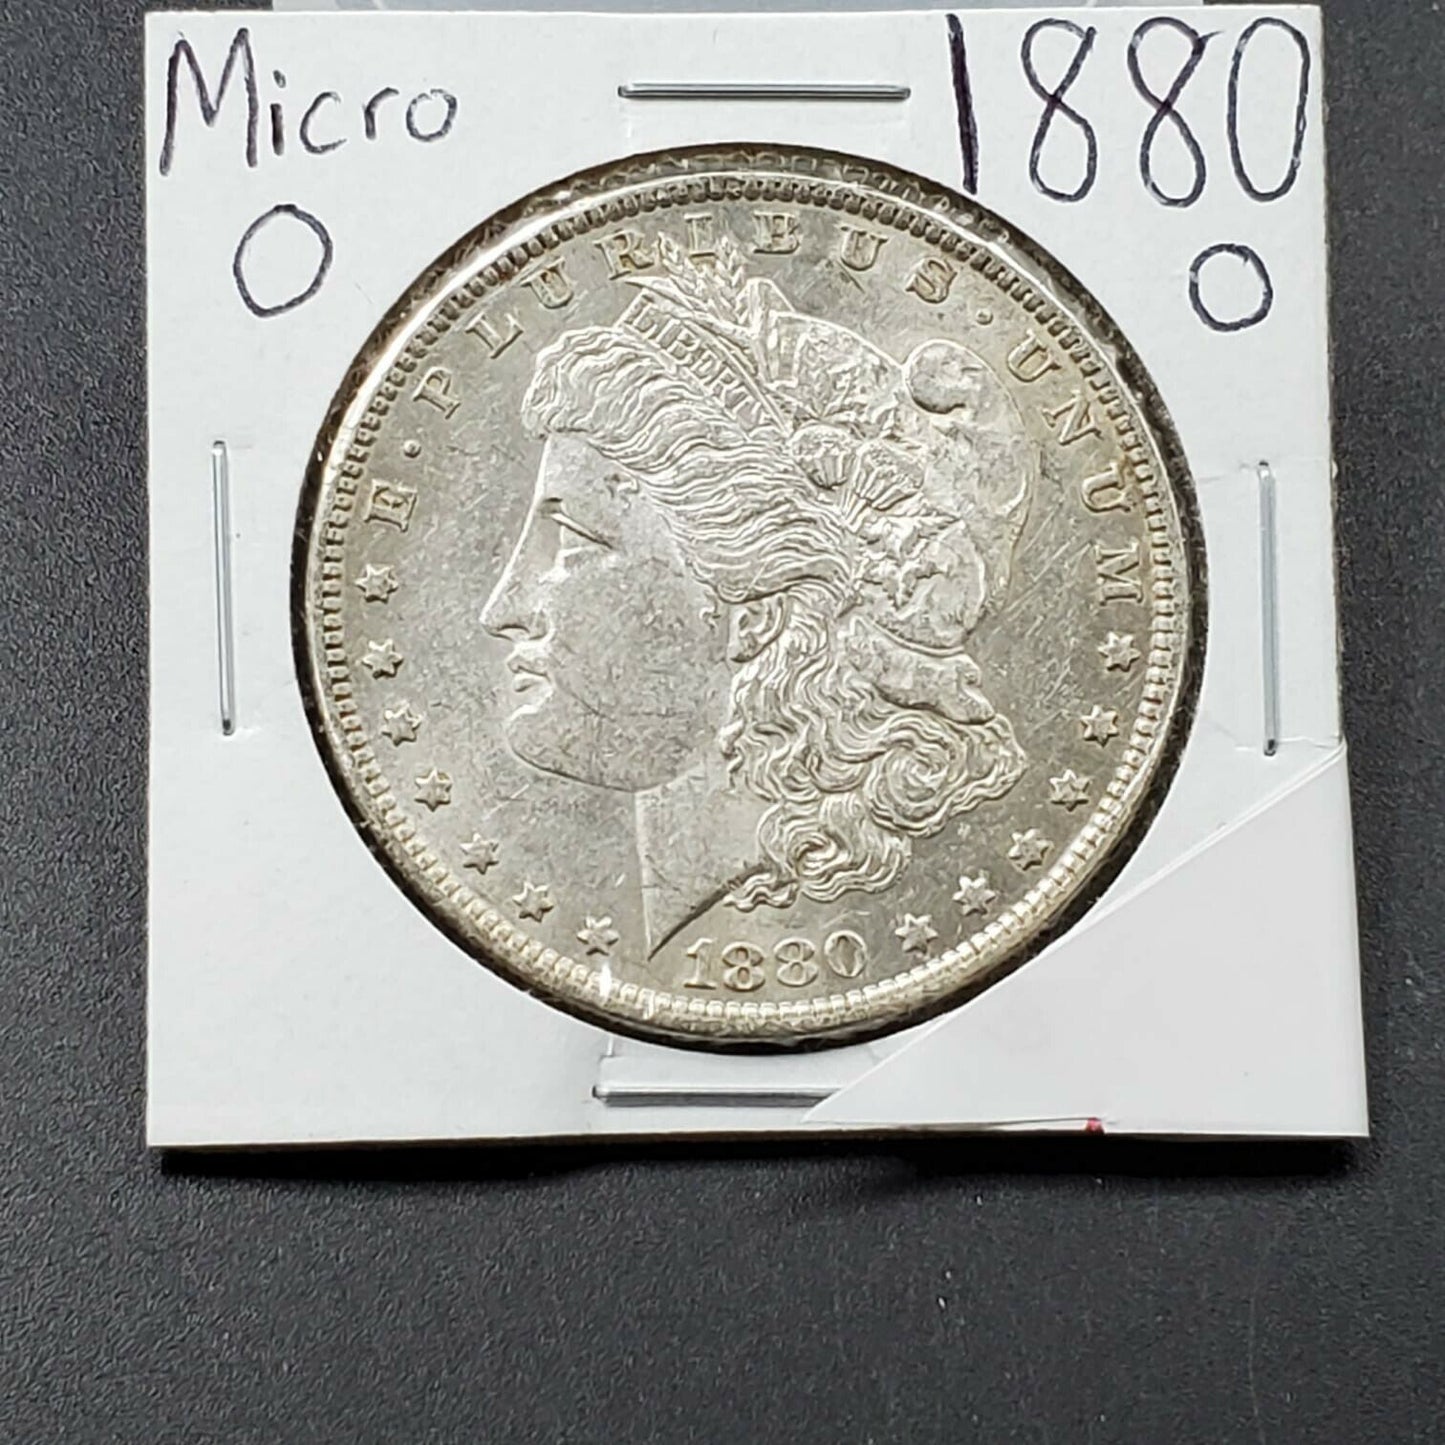 1880 O Morgan Silver Dollar Variety Coin Average UNC Micro o Vam Variety